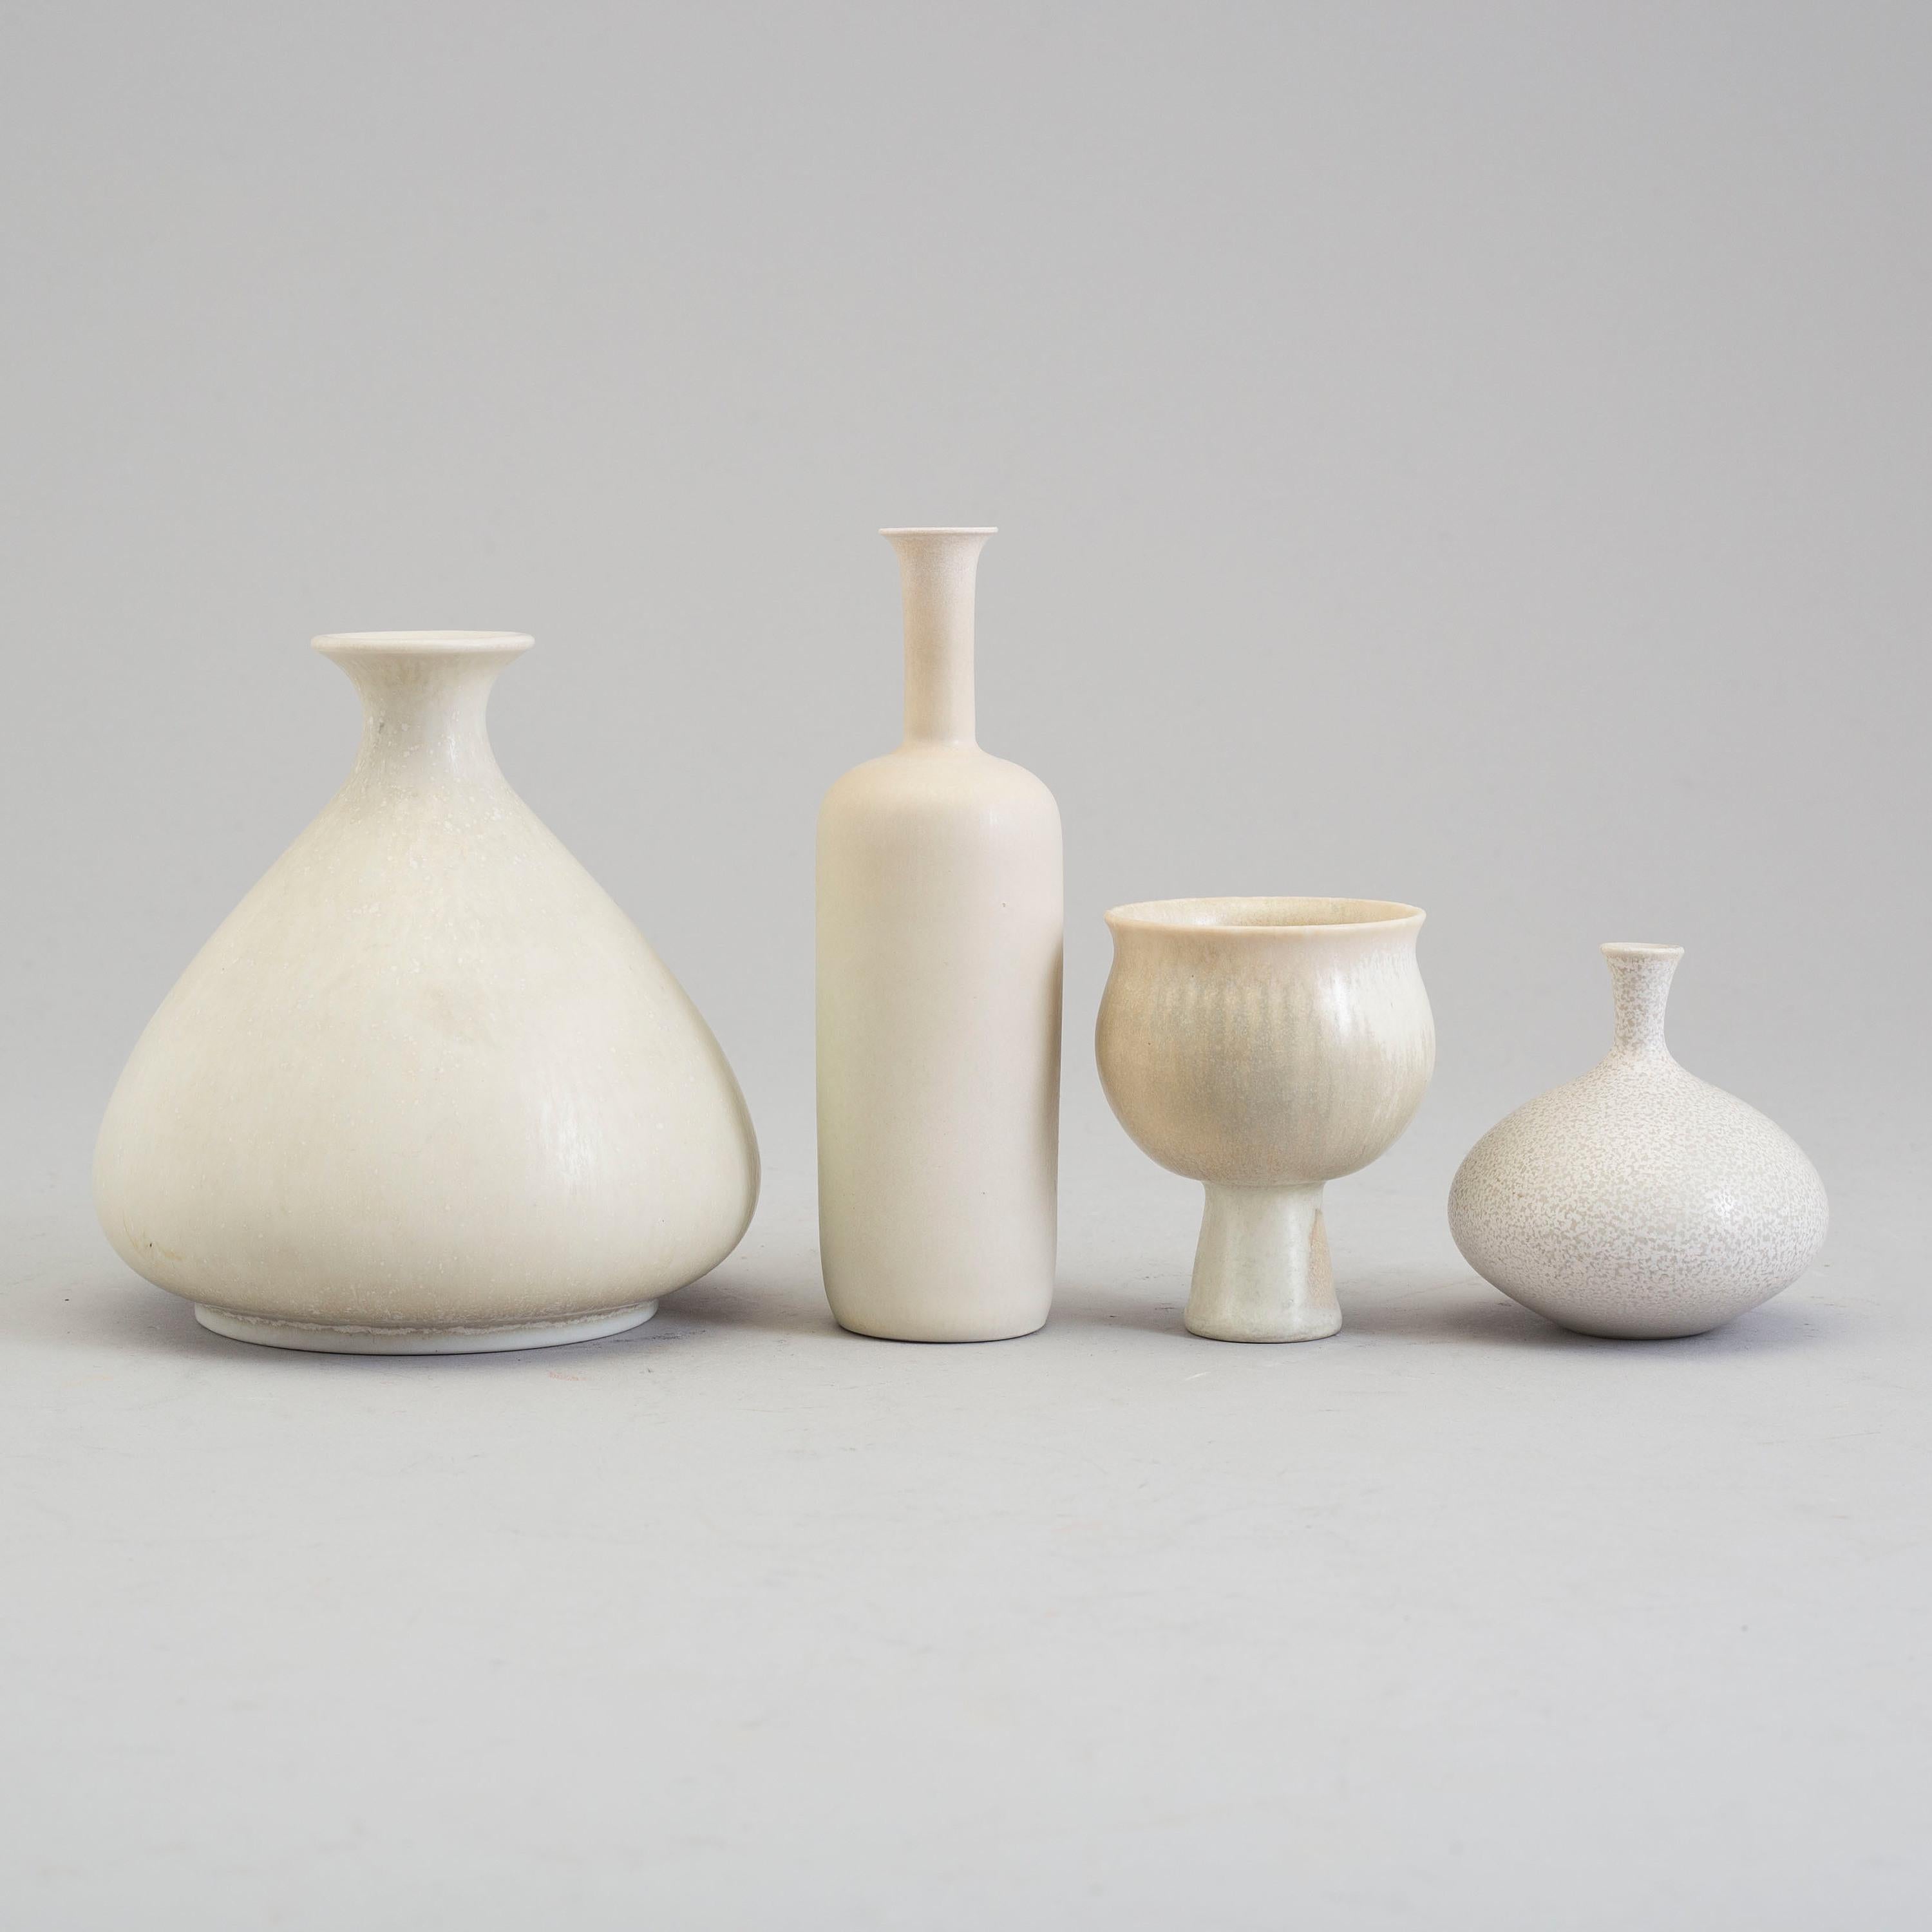 Gunnar Nylund (Suède, 1904-1997)
Quatre petits vases en grès de Rörstrand, émail blanc 
Signé au dos avec 